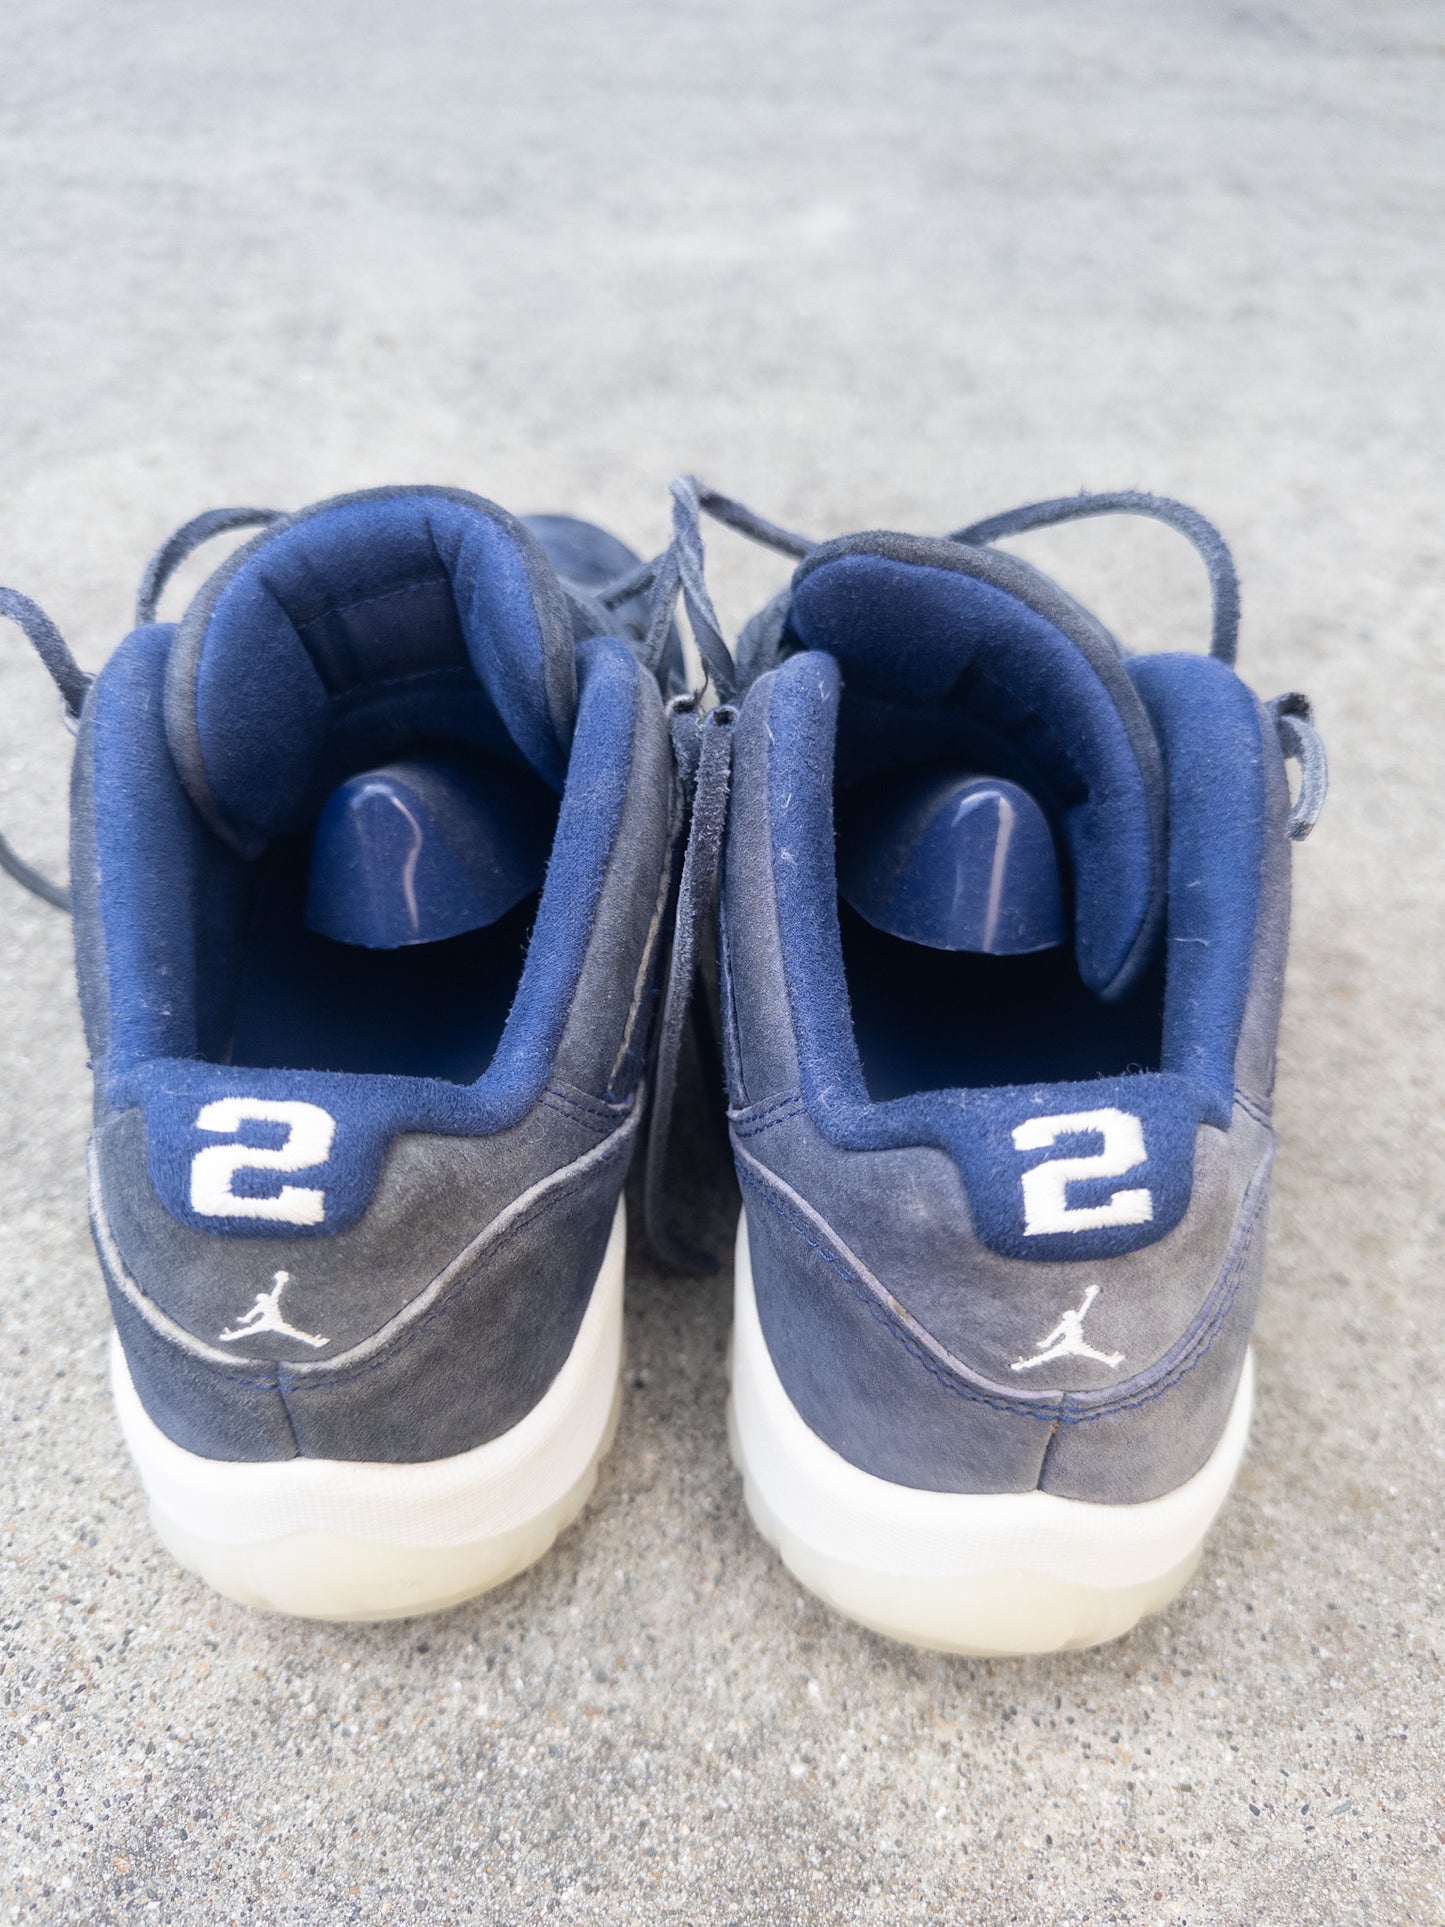 Jordan 11 Retro Low Derek Jeter RE2PECT Size 10 Sneaker